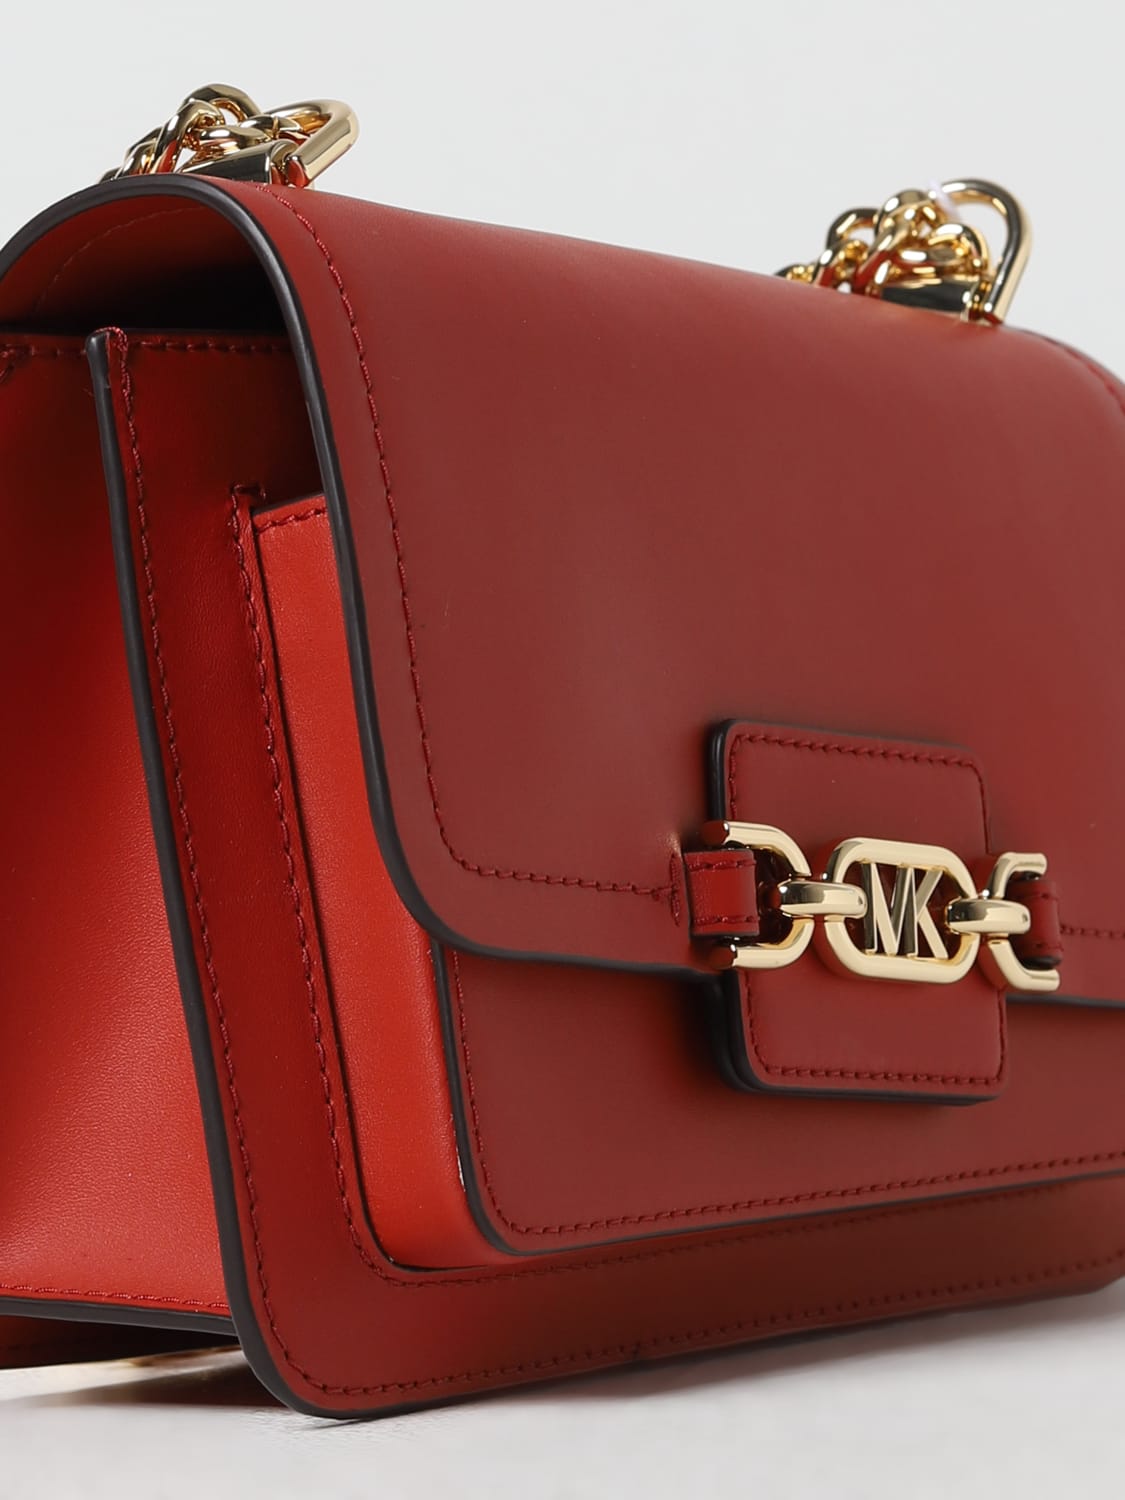 MICHAEL KORS: shoulder bag for woman - Red